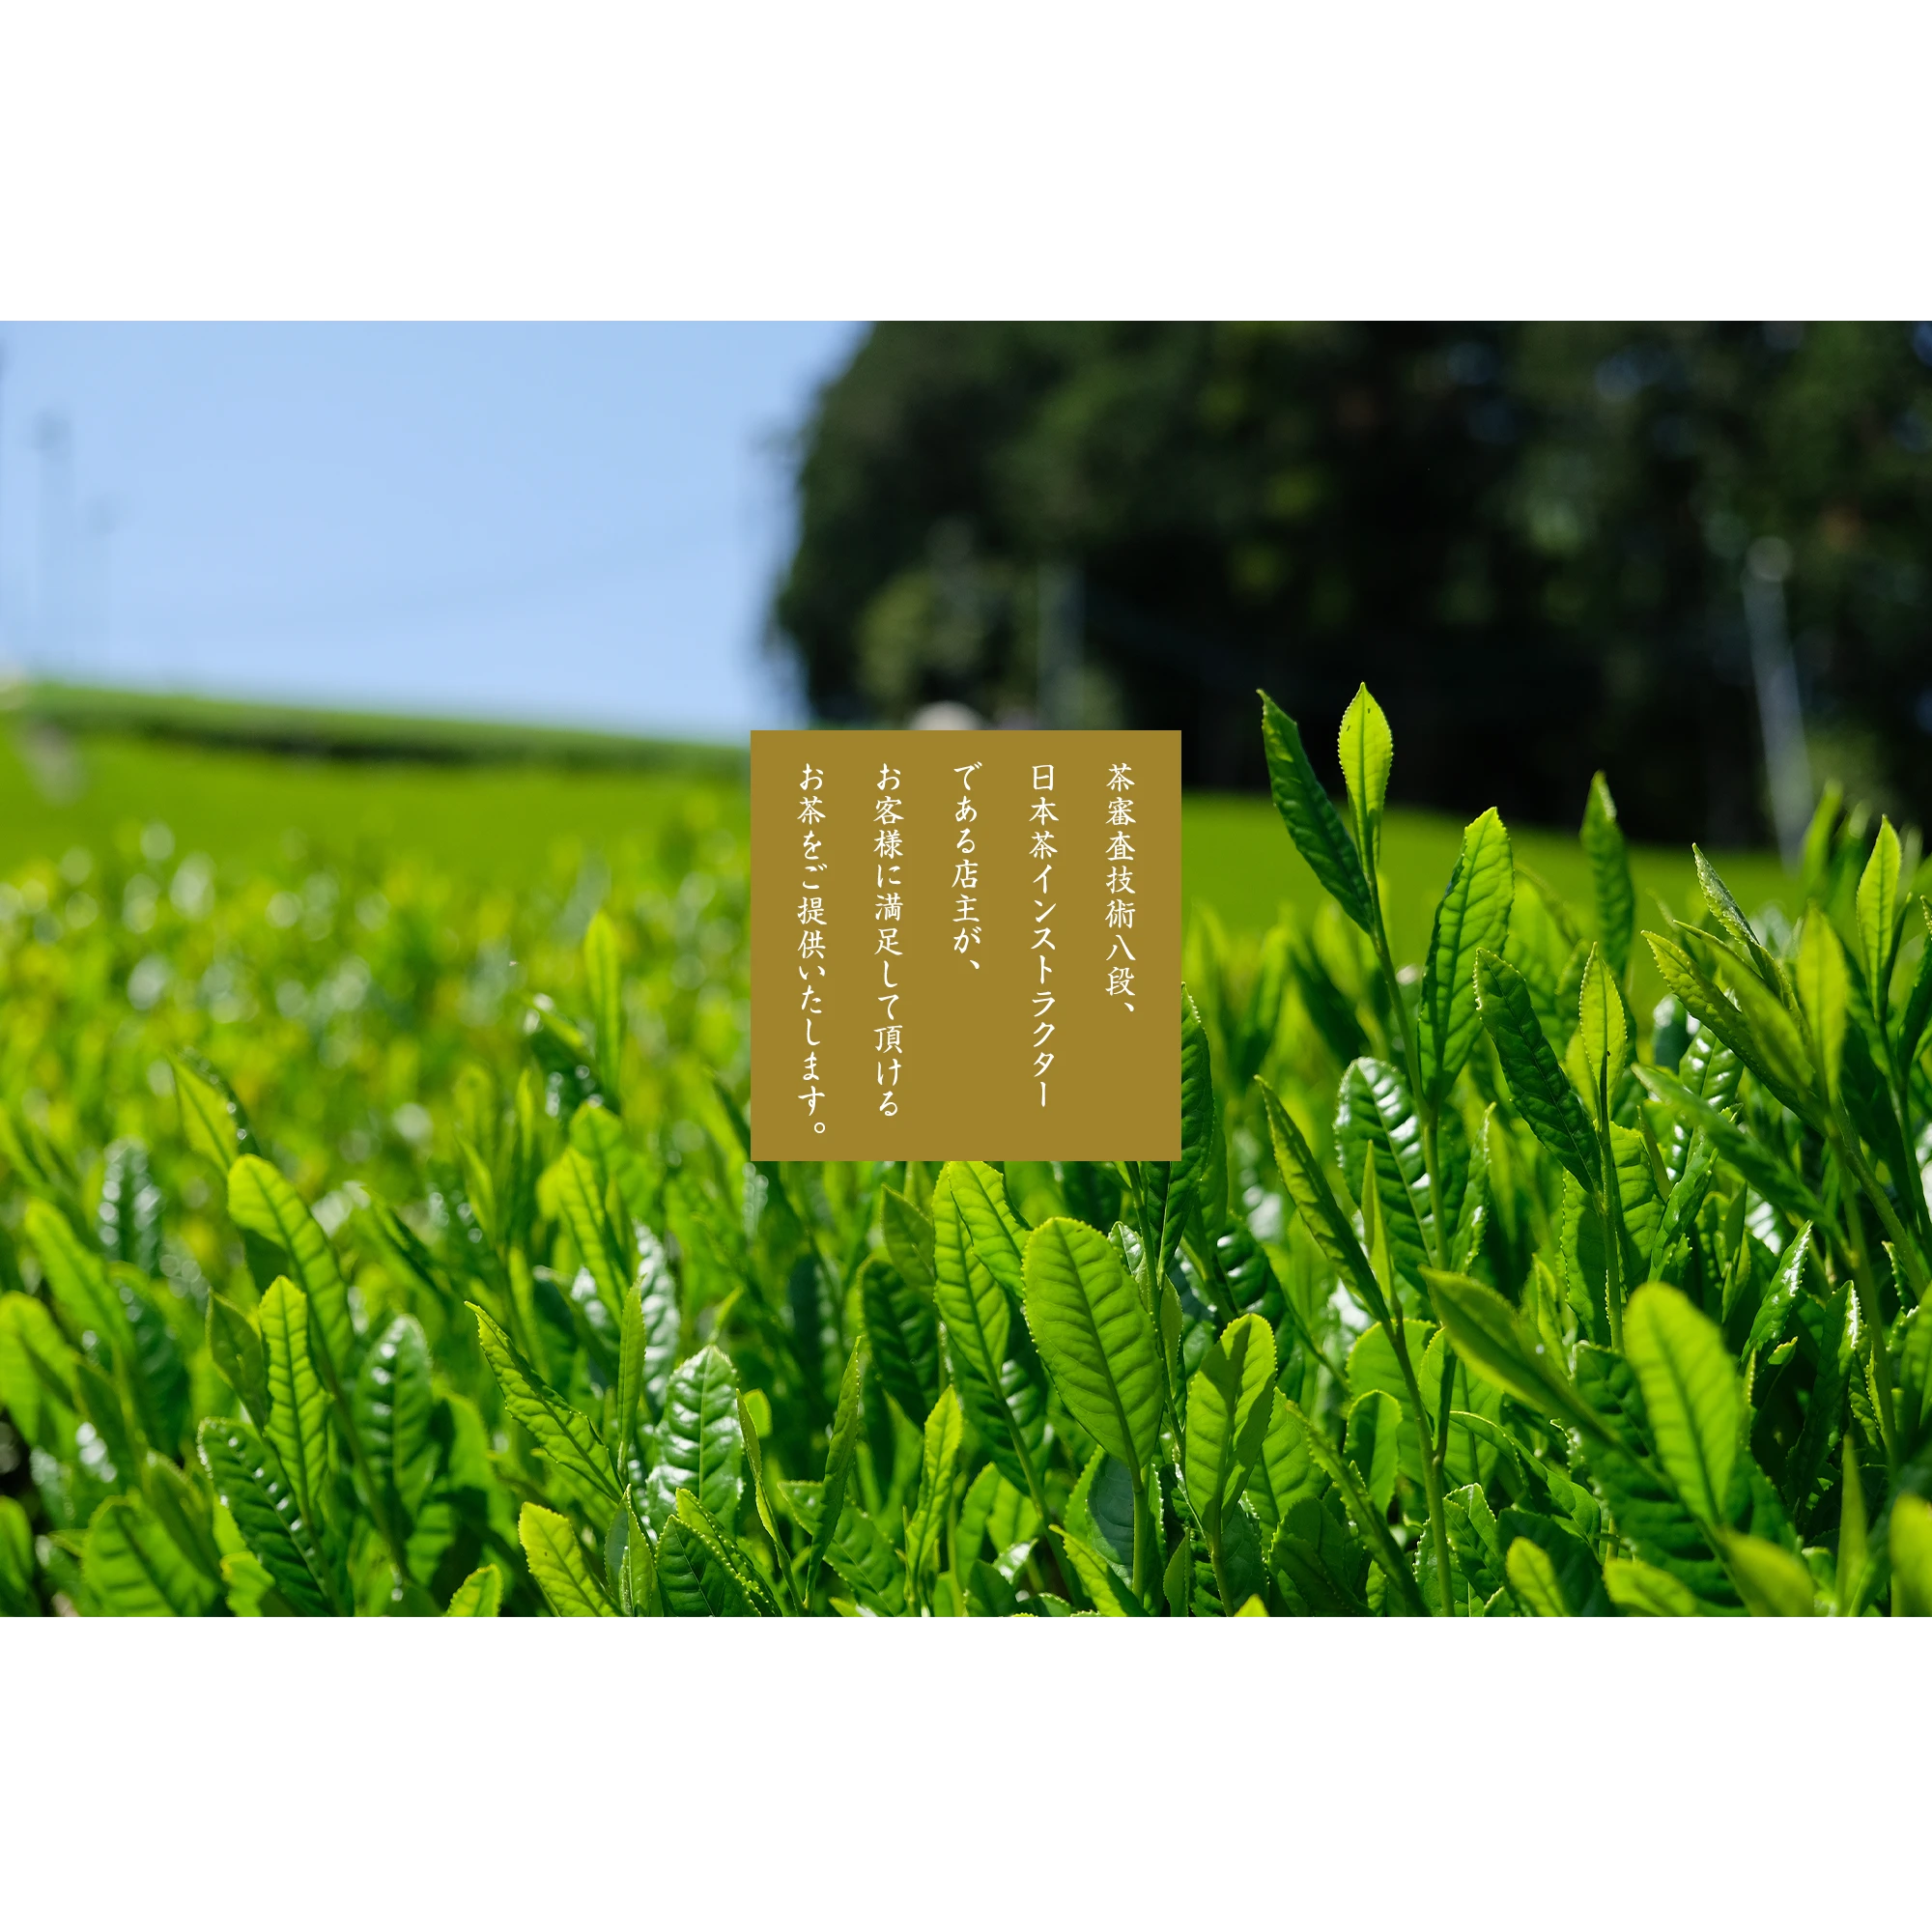 茶審査技術八段、日本茶インストラクターである店主が、お客様に満足して頂けるお茶をご提供いたします